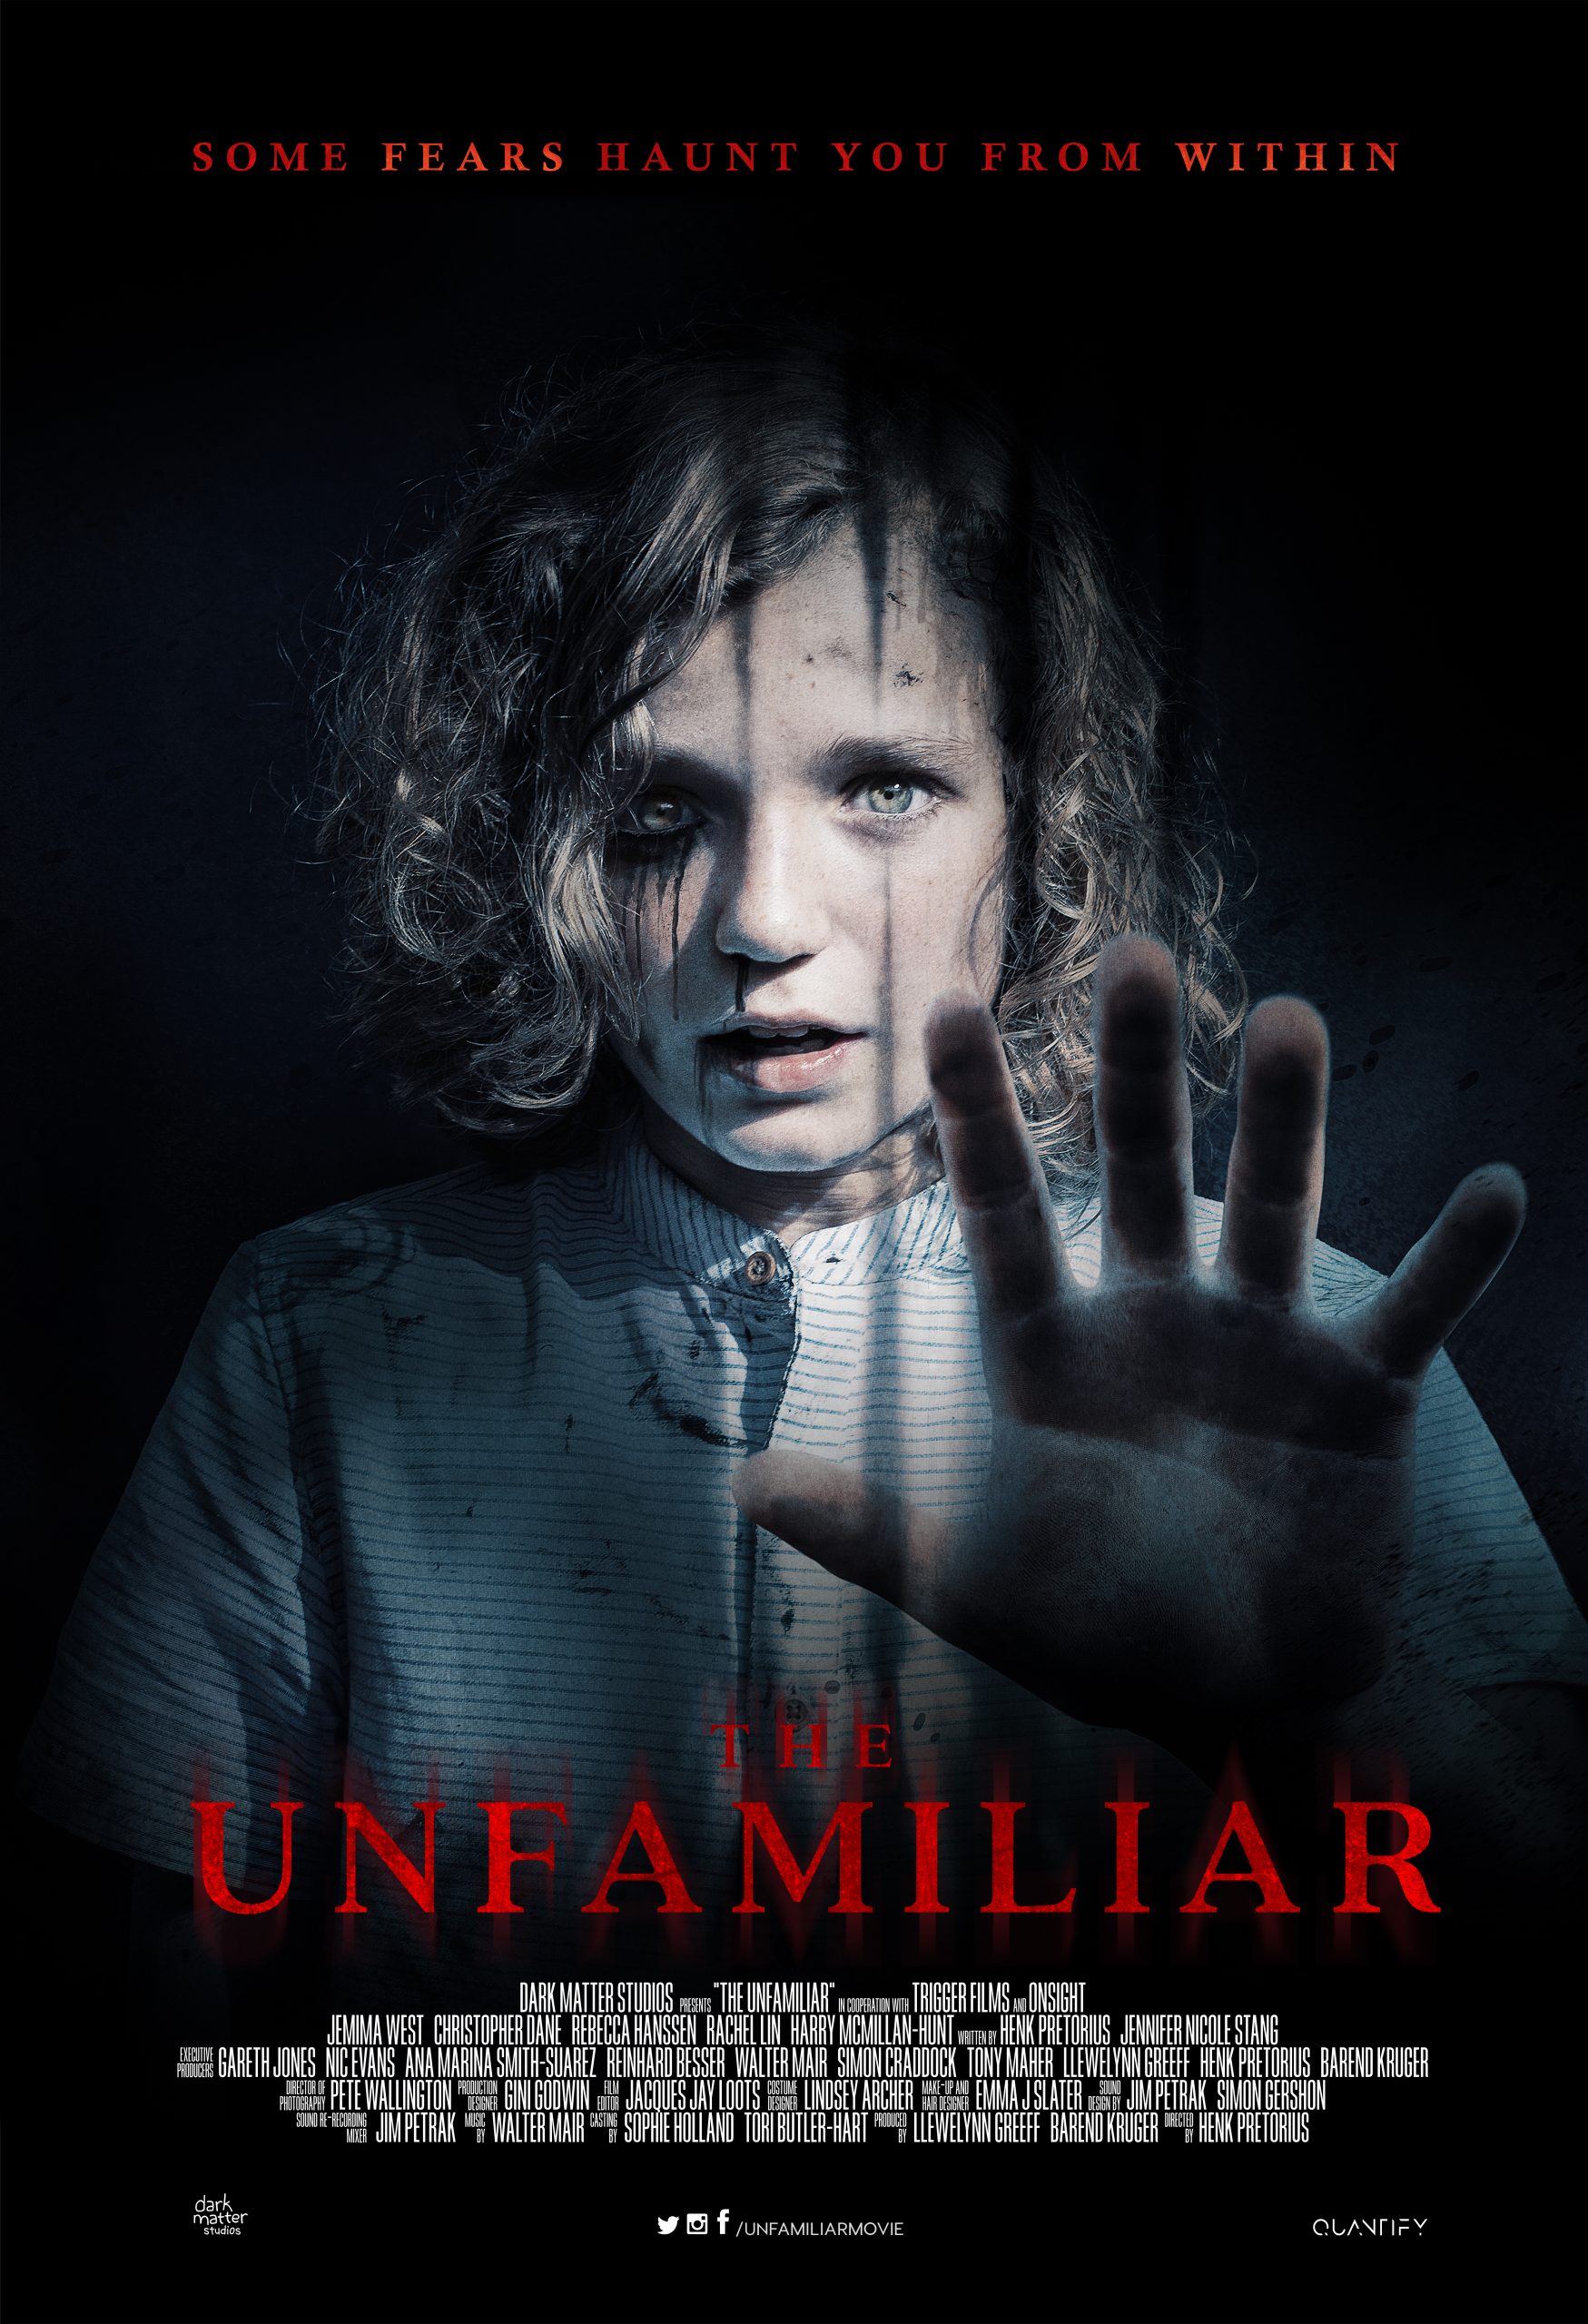 The Unfamiliar 2020 Filmi Full izle | Film izle – HD Full 1080p Online Film İzleme Sitesi